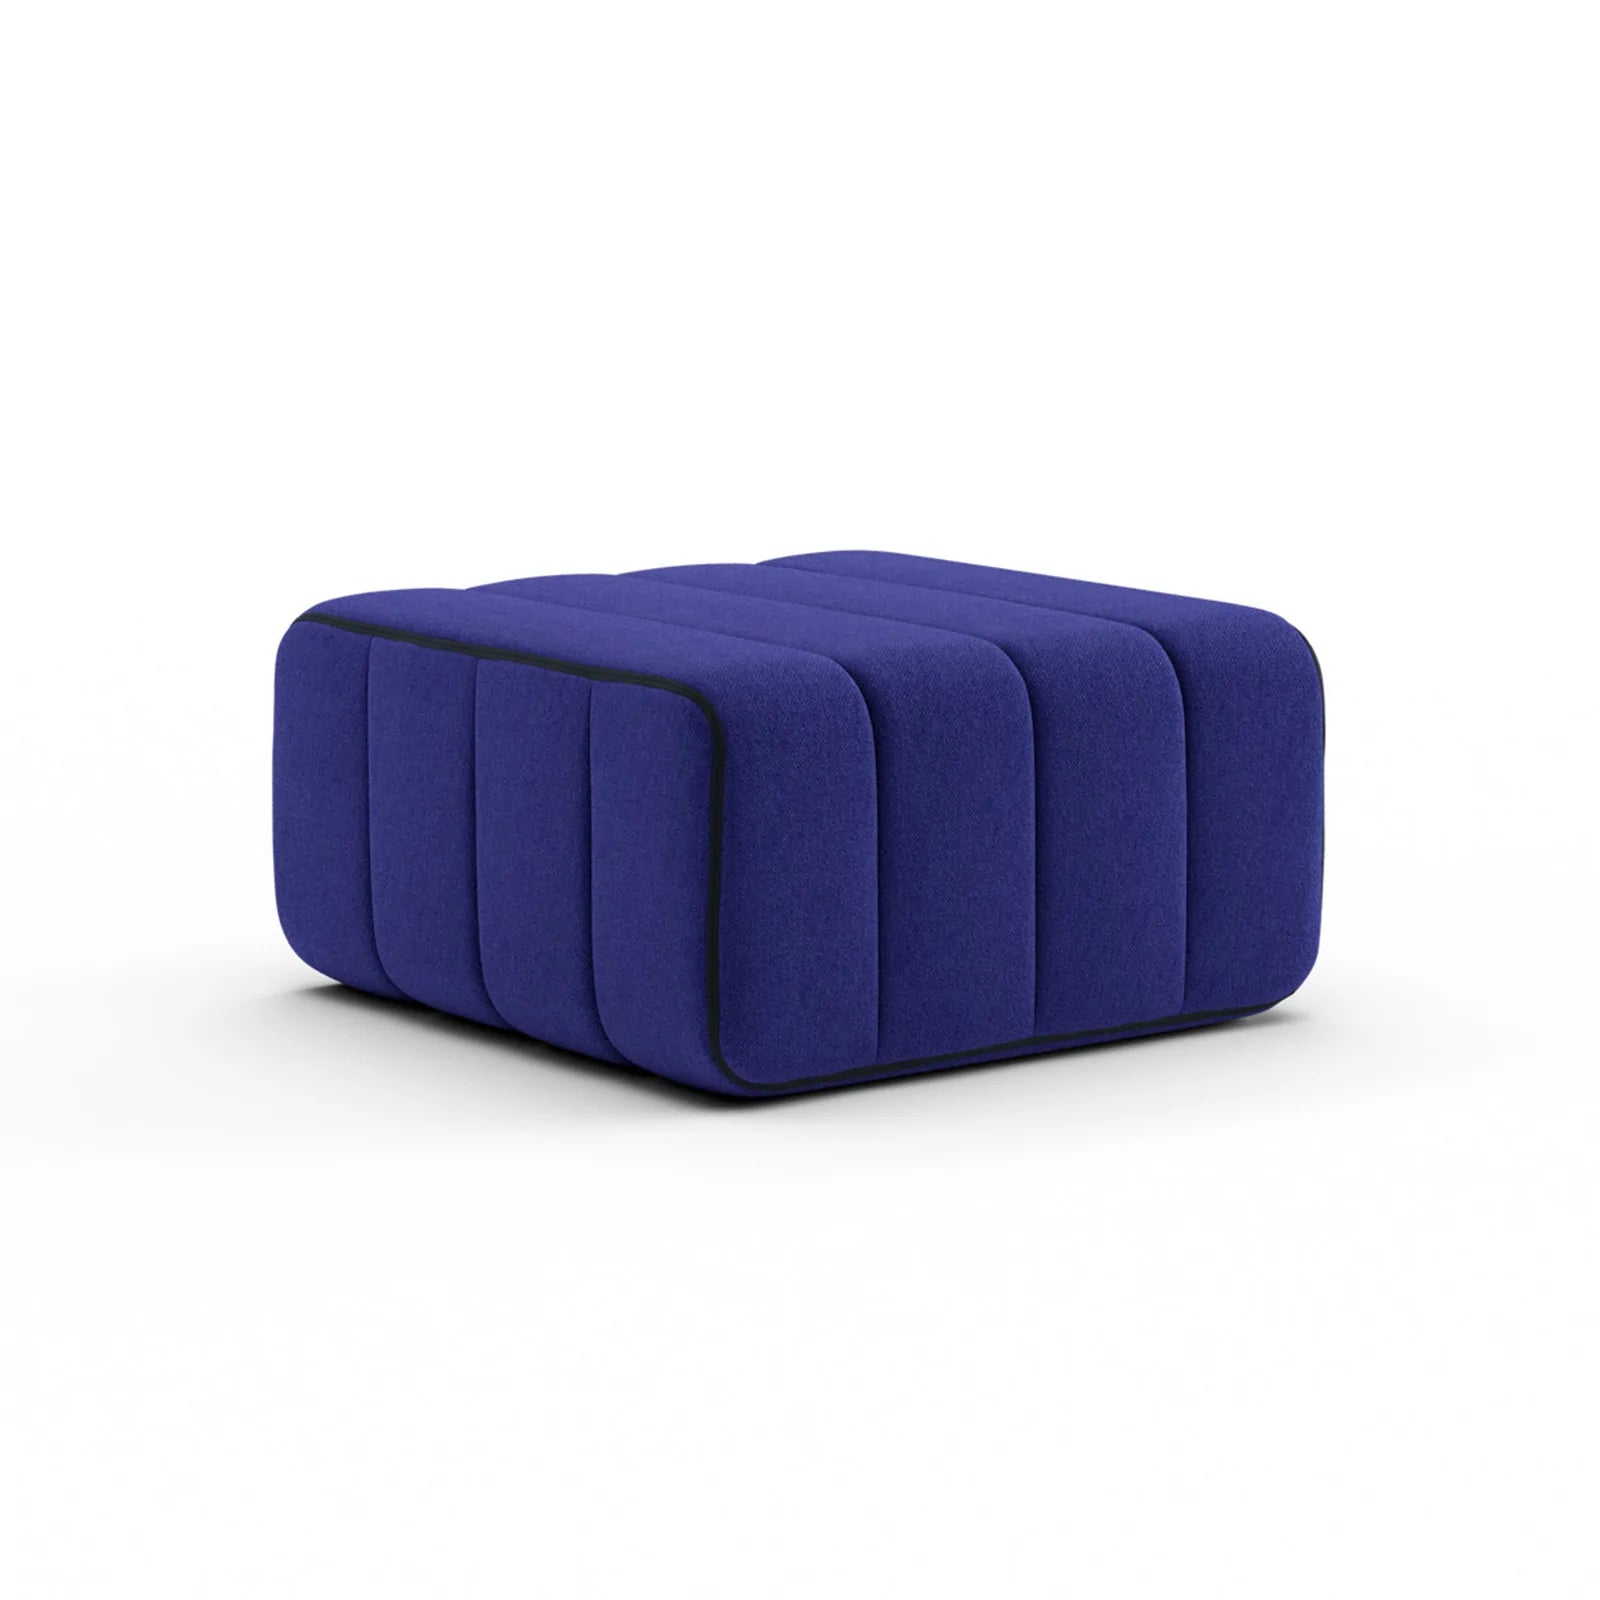 Modulares Sofa-System Curt - Jet Blau Sofas von Ambivalenz